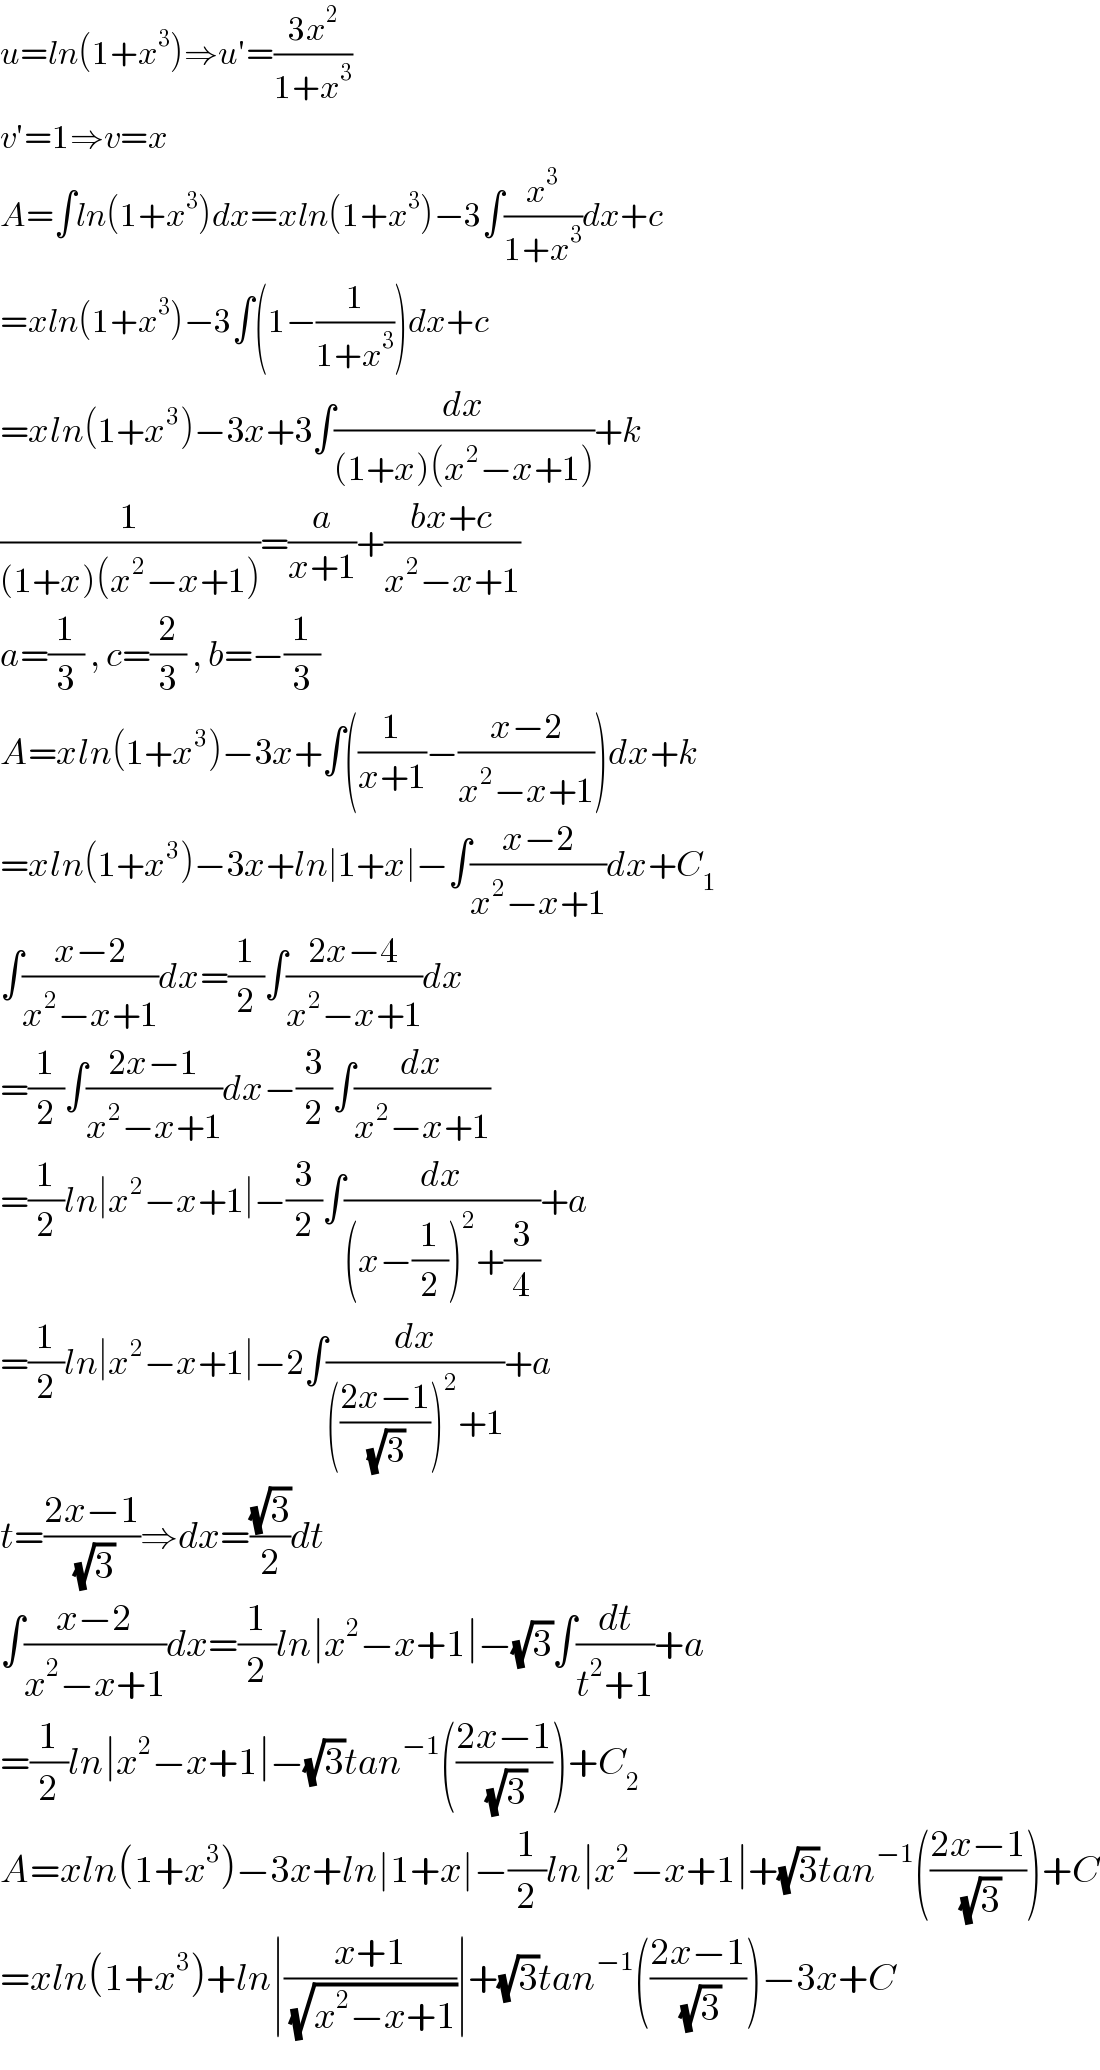 u=ln(1+x^3 )⇒u′=((3x^2 )/(1+x^3 ))  v′=1⇒v=x  A=∫ln(1+x^3 )dx=xln(1+x^3 )−3∫(x^3 /(1+x^3 ))dx+c  =xln(1+x^3 )−3∫(1−(1/(1+x^3 )))dx+c  =xln(1+x^3 )−3x+3∫(dx/((1+x)(x^2 −x+1)))+k  (1/((1+x)(x^2 −x+1)))=(a/(x+1))+((bx+c)/(x^2 −x+1))  a=(1/3) , c=(2/3) , b=−(1/3)  A=xln(1+x^3 )−3x+∫((1/(x+1))−((x−2)/(x^2 −x+1)))dx+k  =xln(1+x^3 )−3x+ln∣1+x∣−∫((x−2)/(x^2 −x+1))dx+C_1   ∫((x−2)/(x^2 −x+1))dx=(1/2)∫((2x−4)/(x^2 −x+1))dx  =(1/2)∫((2x−1)/(x^2 −x+1))dx−(3/2)∫(dx/(x^2 −x+1))  =(1/2)ln∣x^2 −x+1∣−(3/2)∫(dx/((x−(1/2))^2 +(3/4)))+a  =(1/2)ln∣x^2 −x+1∣−2∫(dx/((((2x−1)/(√3)))^2 +1))+a  t=((2x−1)/(√3))⇒dx=((√3)/2)dt  ∫((x−2)/(x^2 −x+1))dx=(1/2)ln∣x^2 −x+1∣−(√3)∫(dt/(t^2 +1))+a  =(1/2)ln∣x^2 −x+1∣−(√3)tan^(−1) (((2x−1)/(√3)))+C_2   A=xln(1+x^3 )−3x+ln∣1+x∣−(1/2)ln∣x^2 −x+1∣+(√3)tan^(−1) (((2x−1)/(√3)))+C  =xln(1+x^3 )+ln∣((x+1)/(√(x^2 −x+1)))∣+(√3)tan^(−1) (((2x−1)/(√3)))−3x+C  